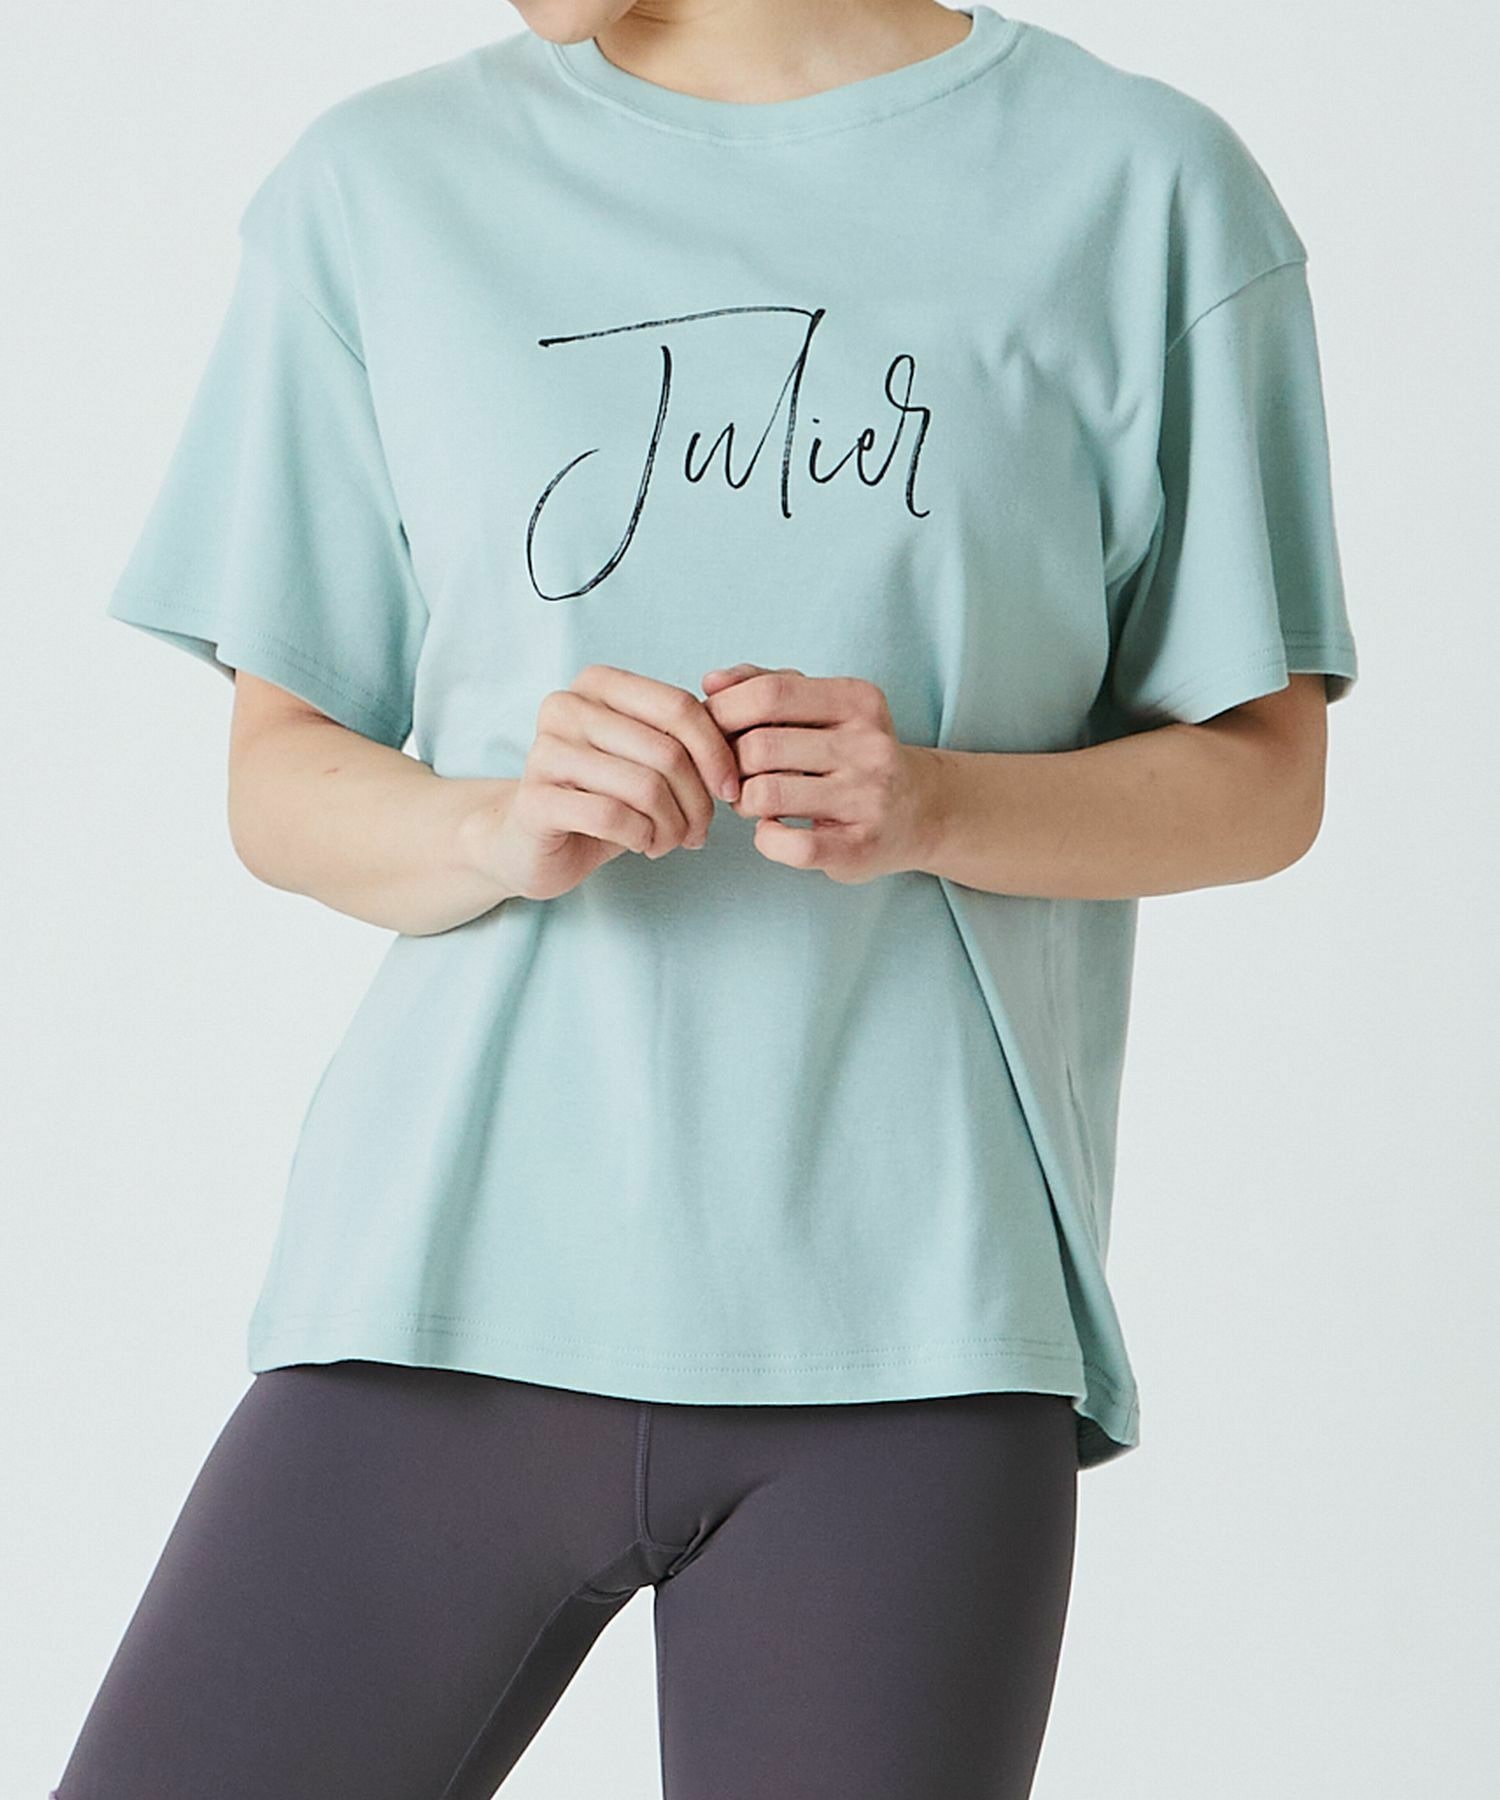 【Julier】JulierプリントTシャツ 詳細画像 ミント 11